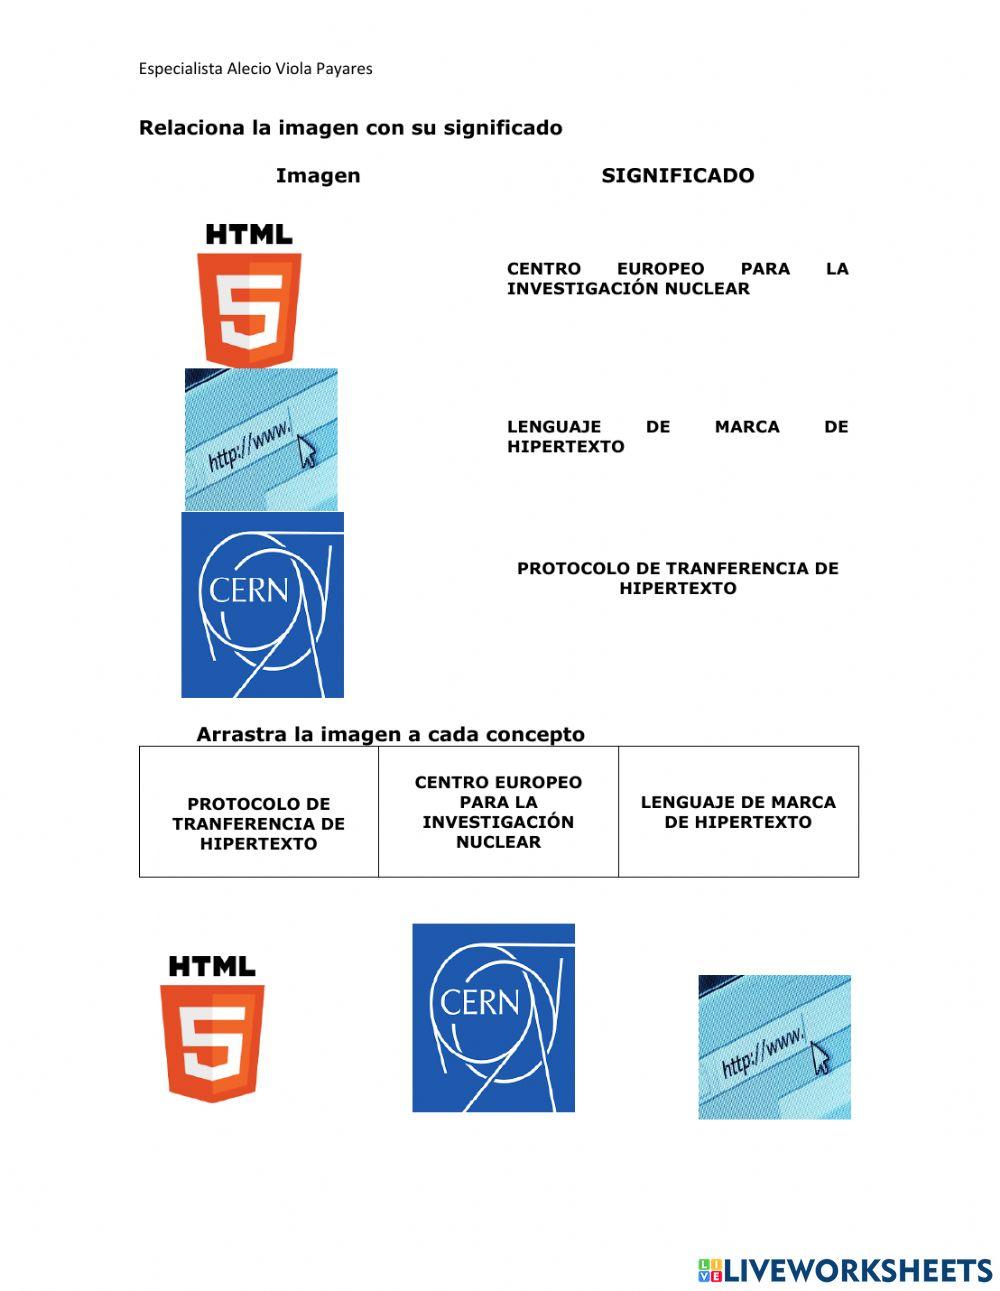 Que es HTML?